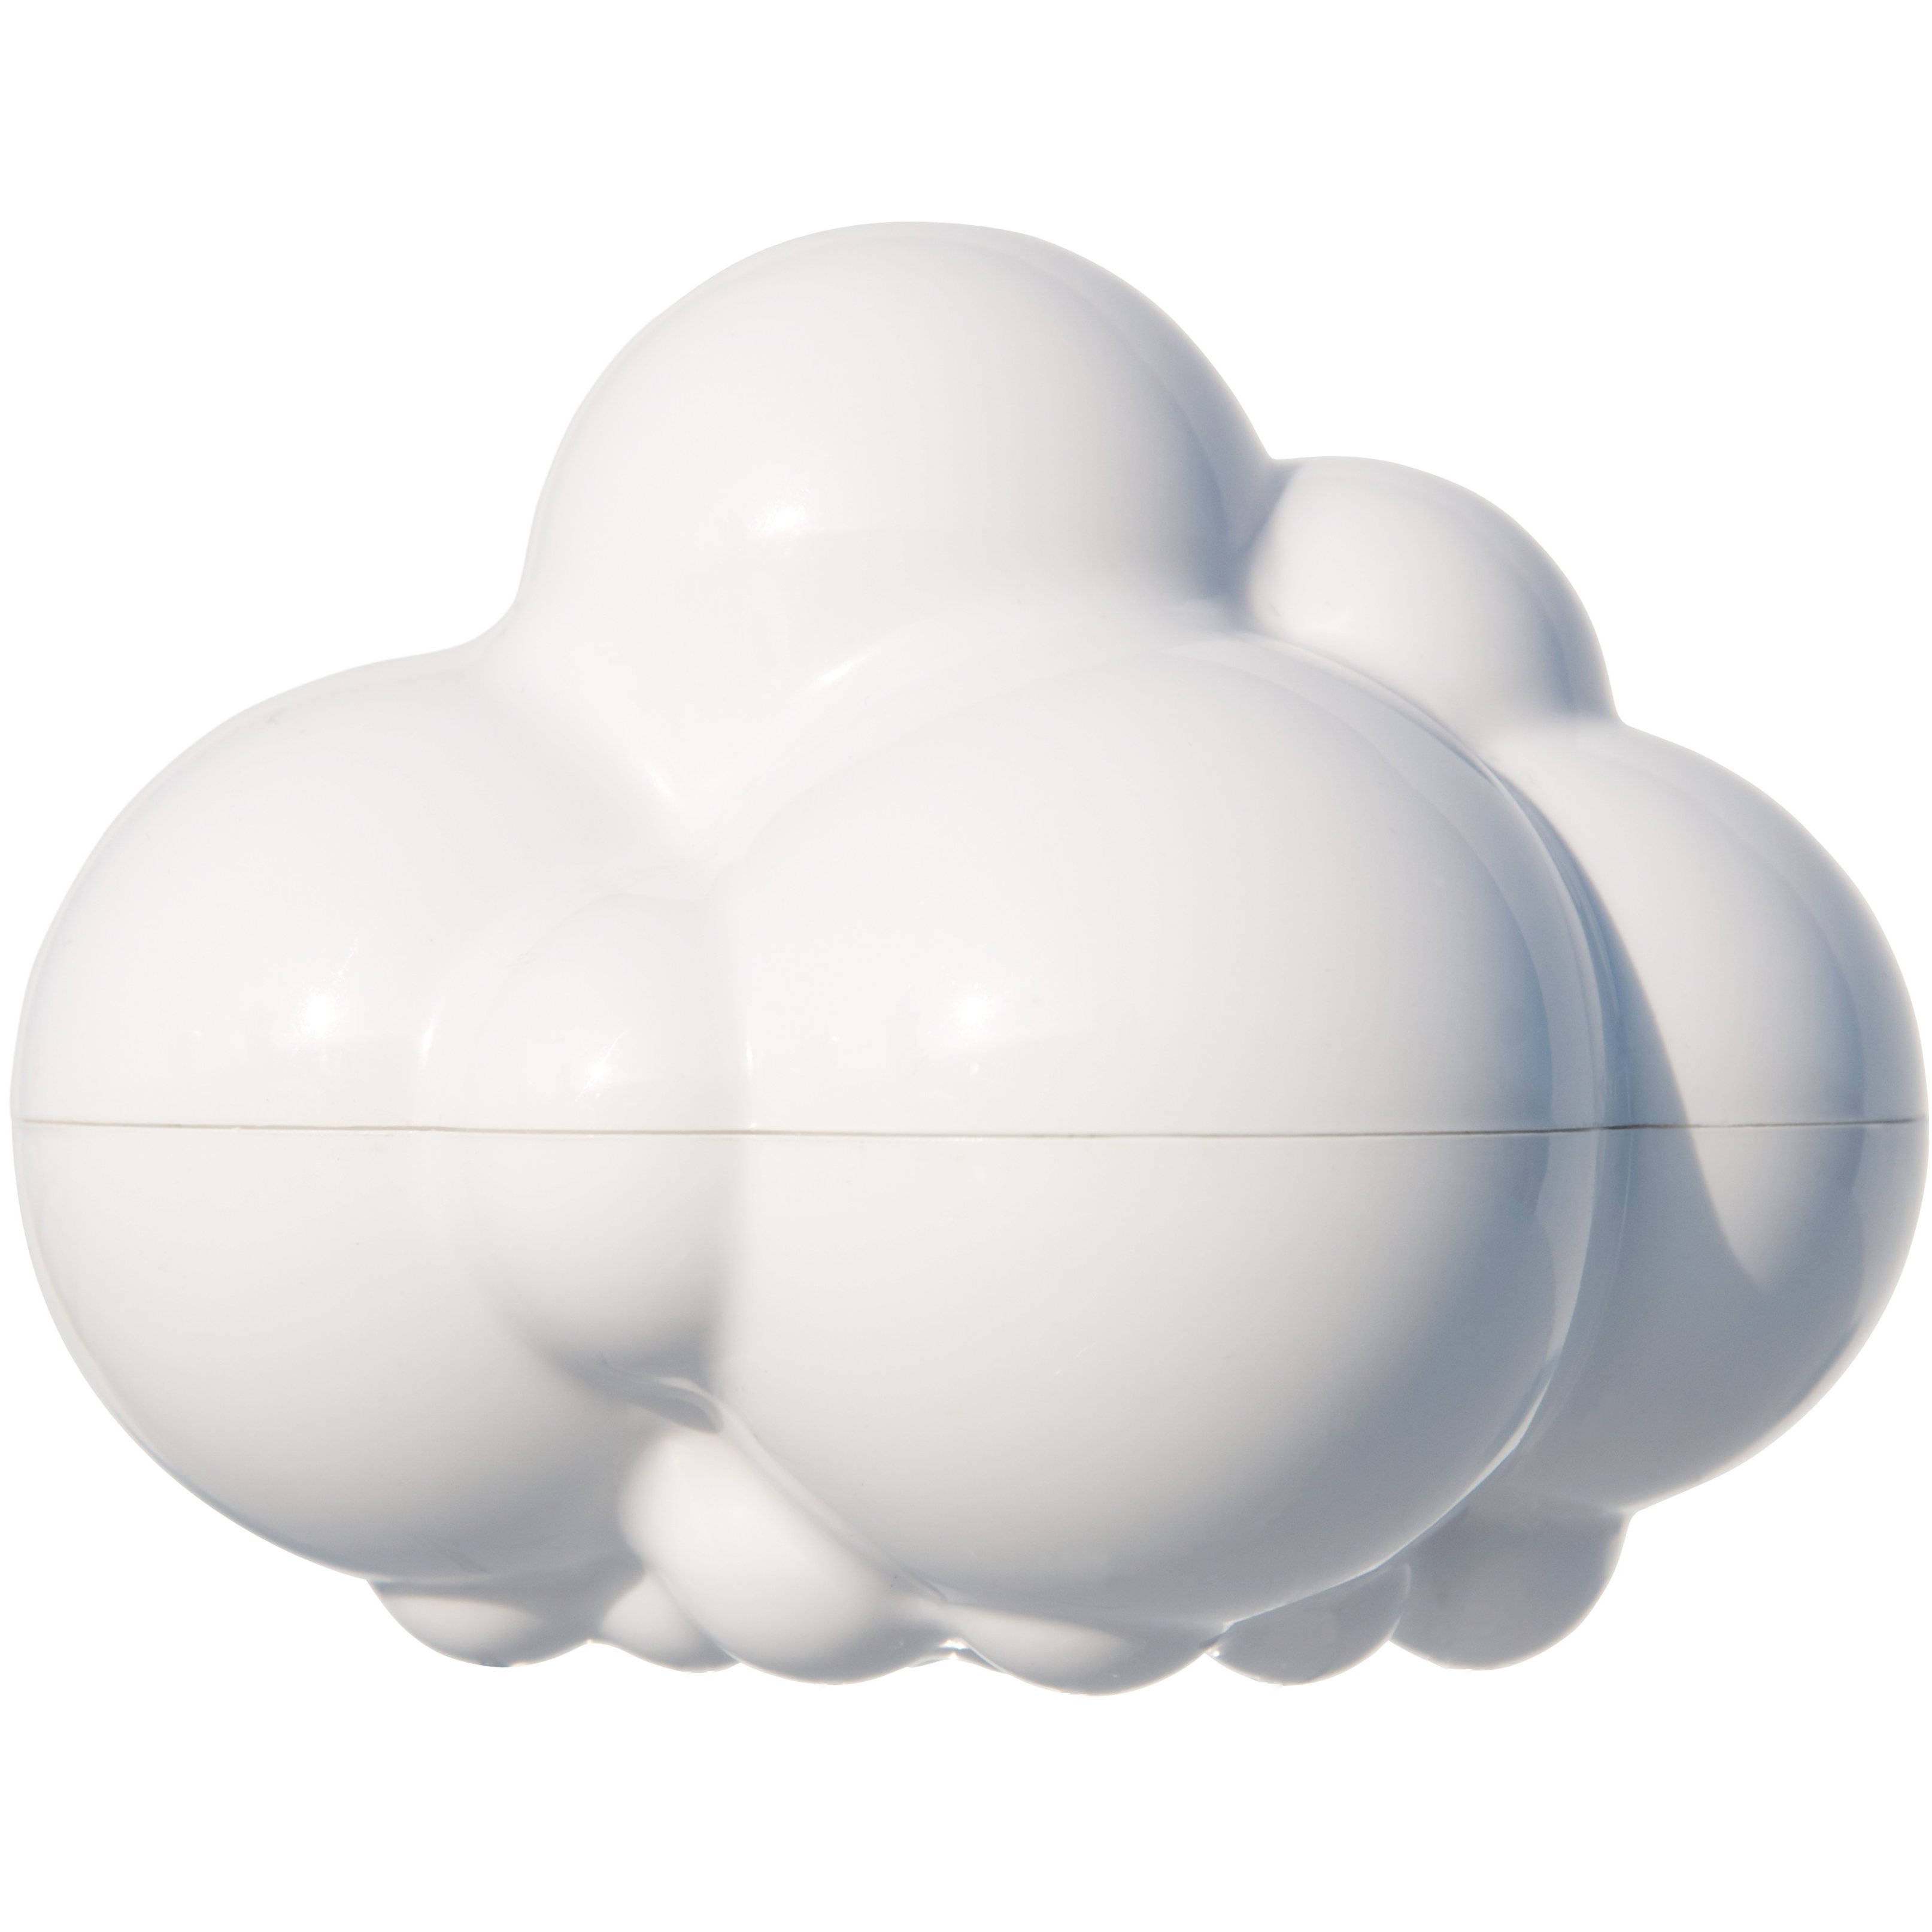 Игрушка для ванной Moluk Плюи Облако, белая (43060) - фото 1